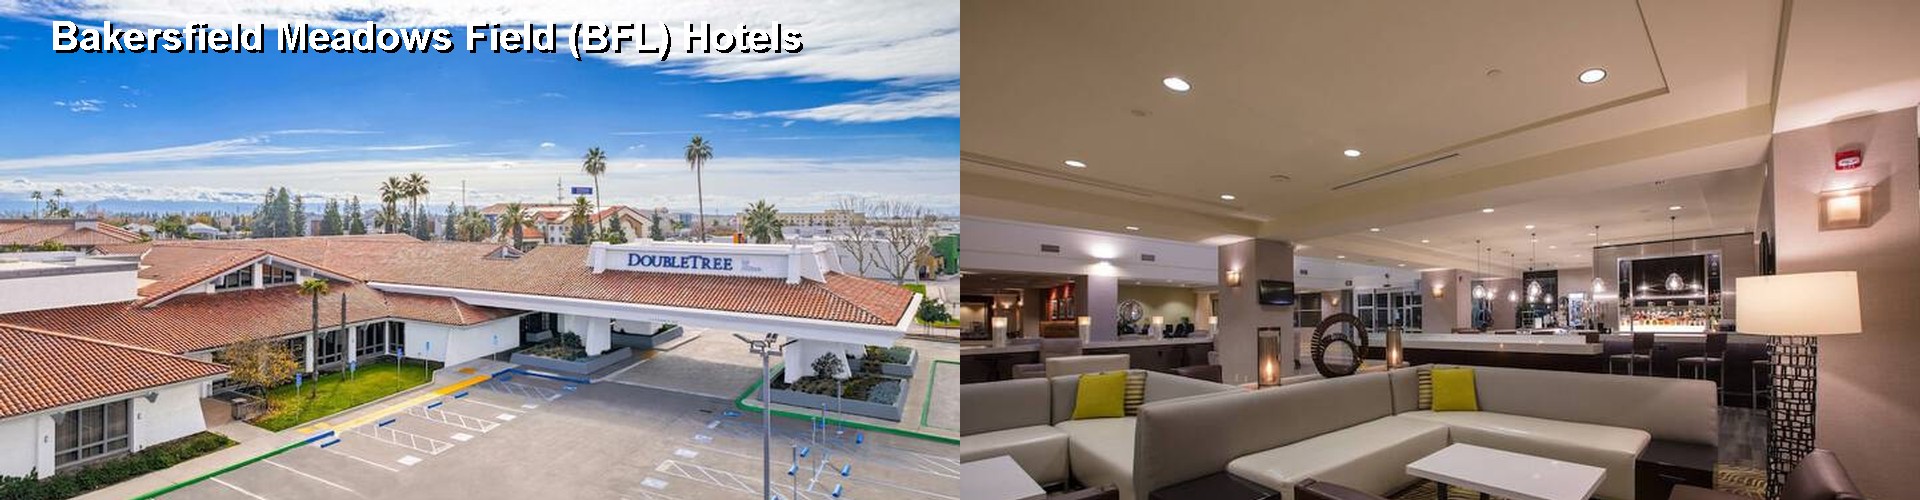 3 Best Hotels near Bakersfield Meadows Field (BFL)